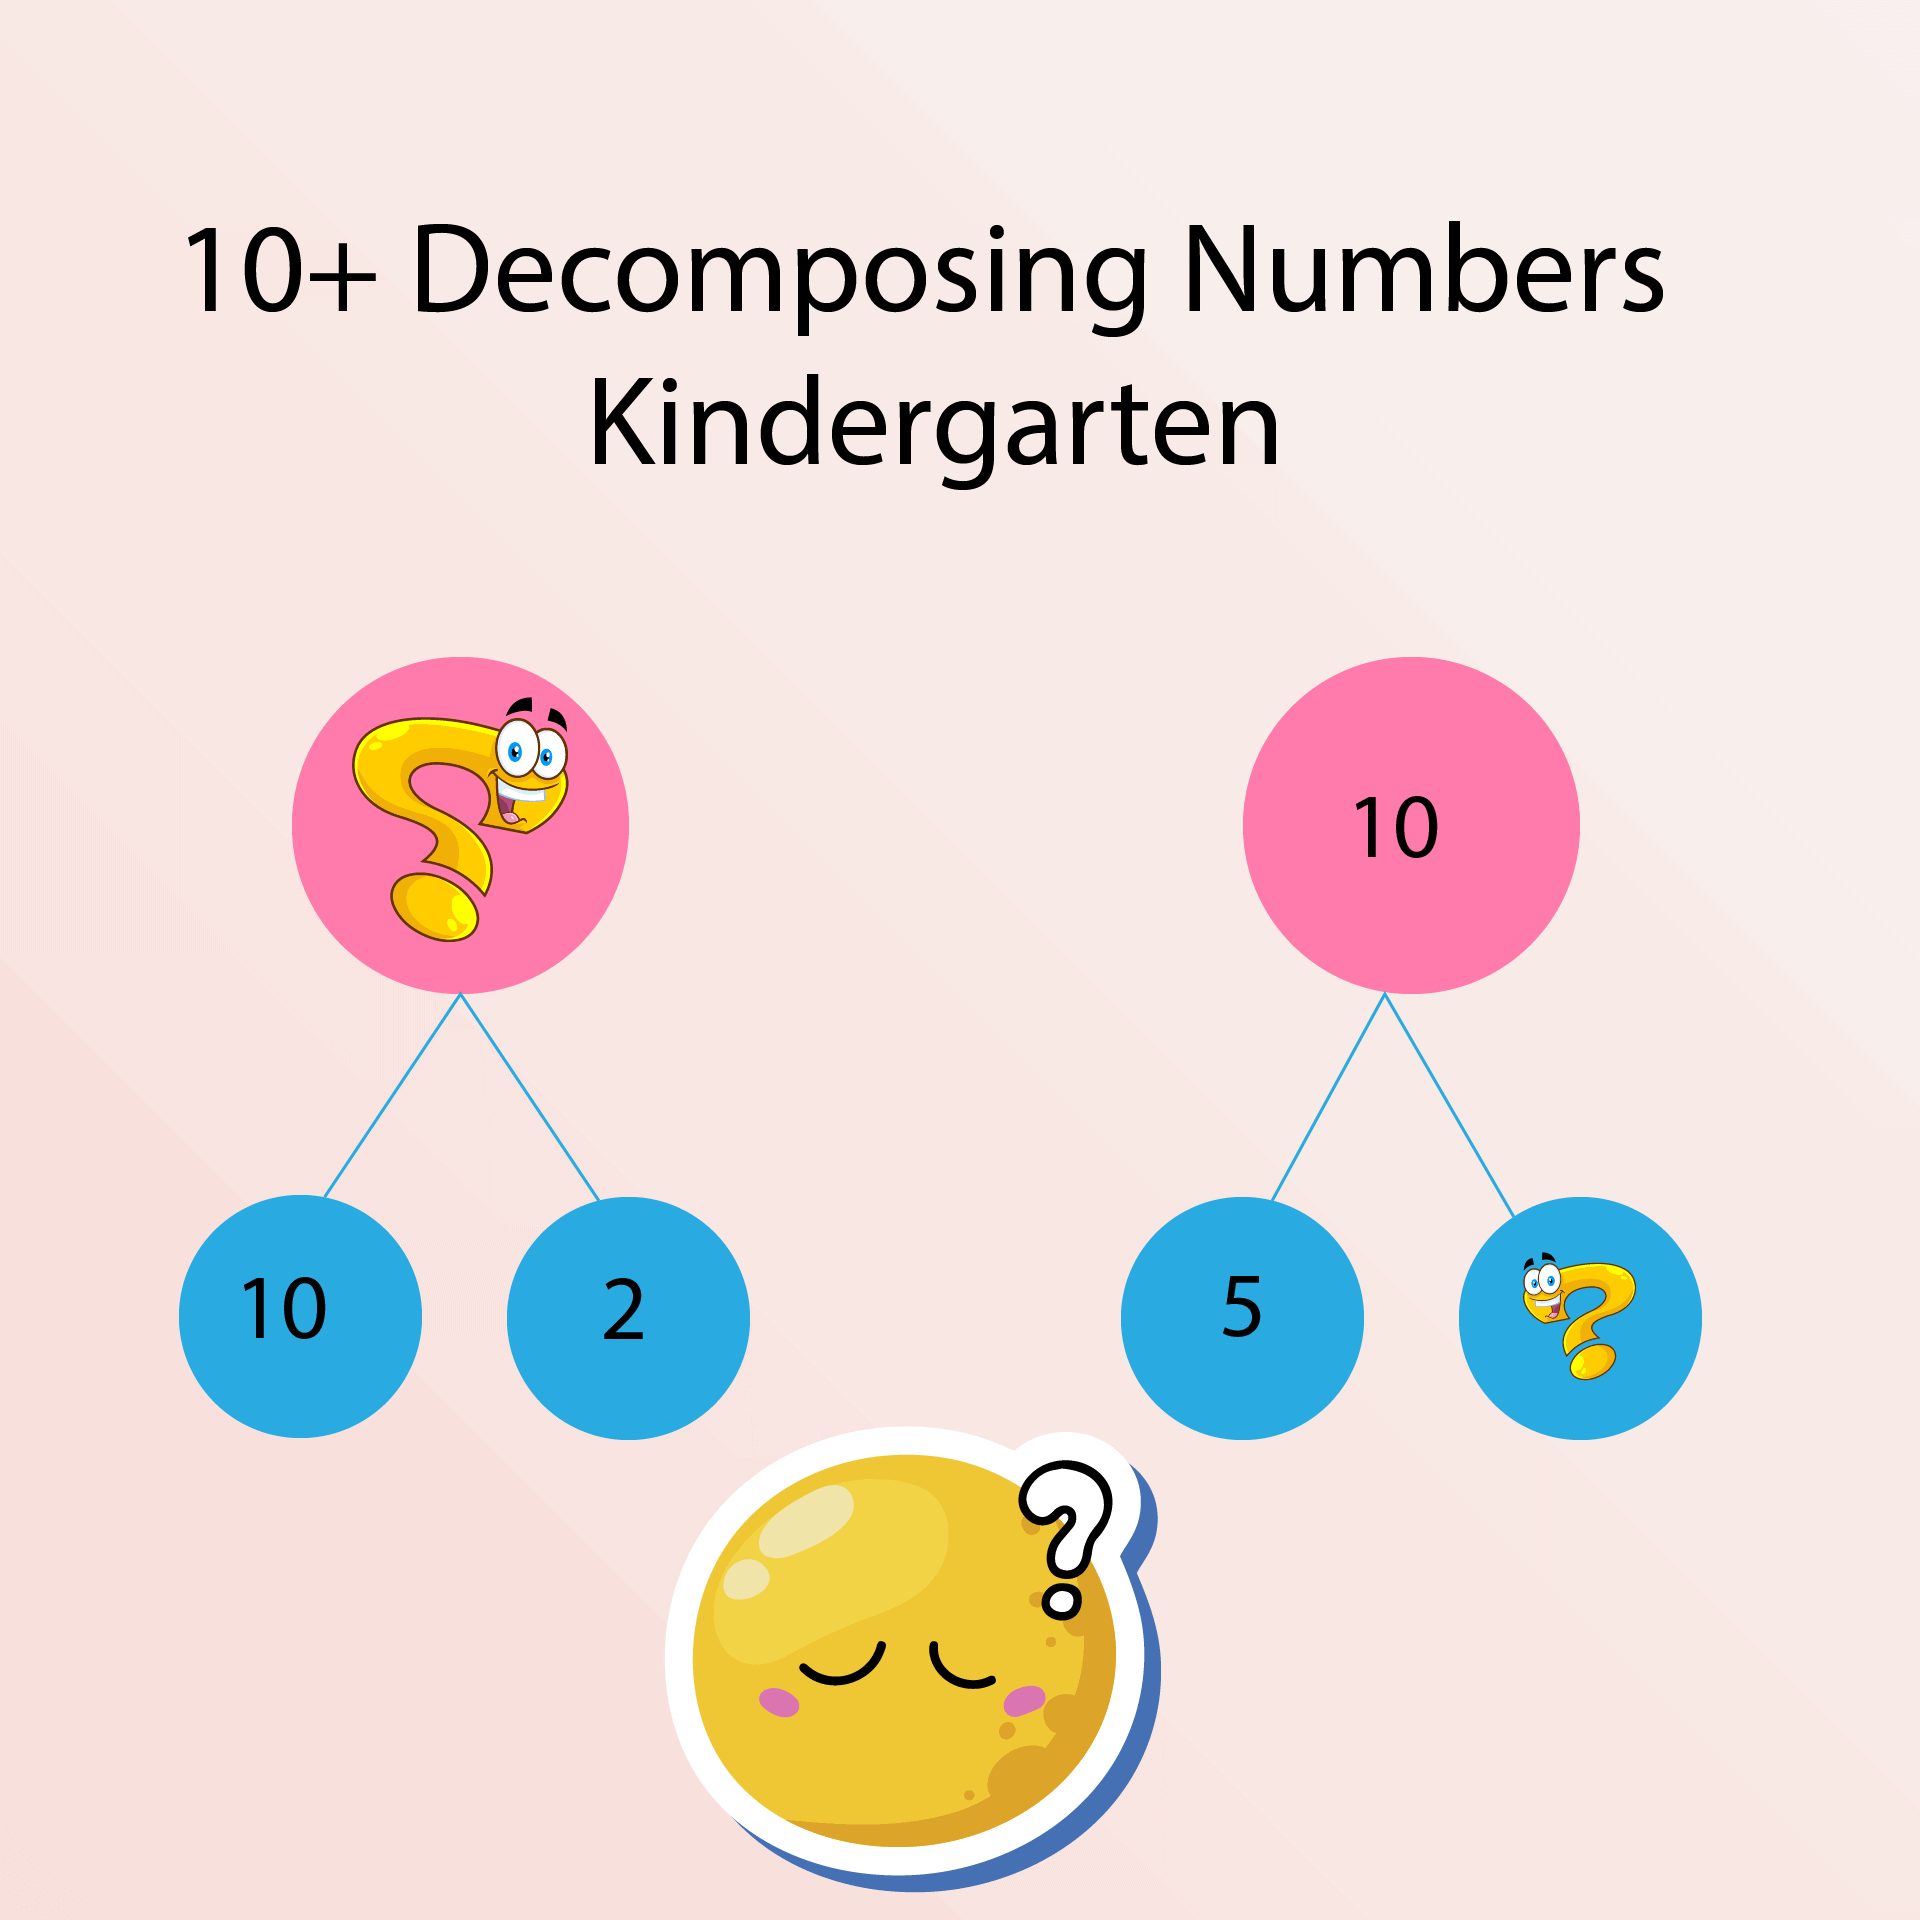 9 Free Decomposing Numbers Kindergarten Worksheet